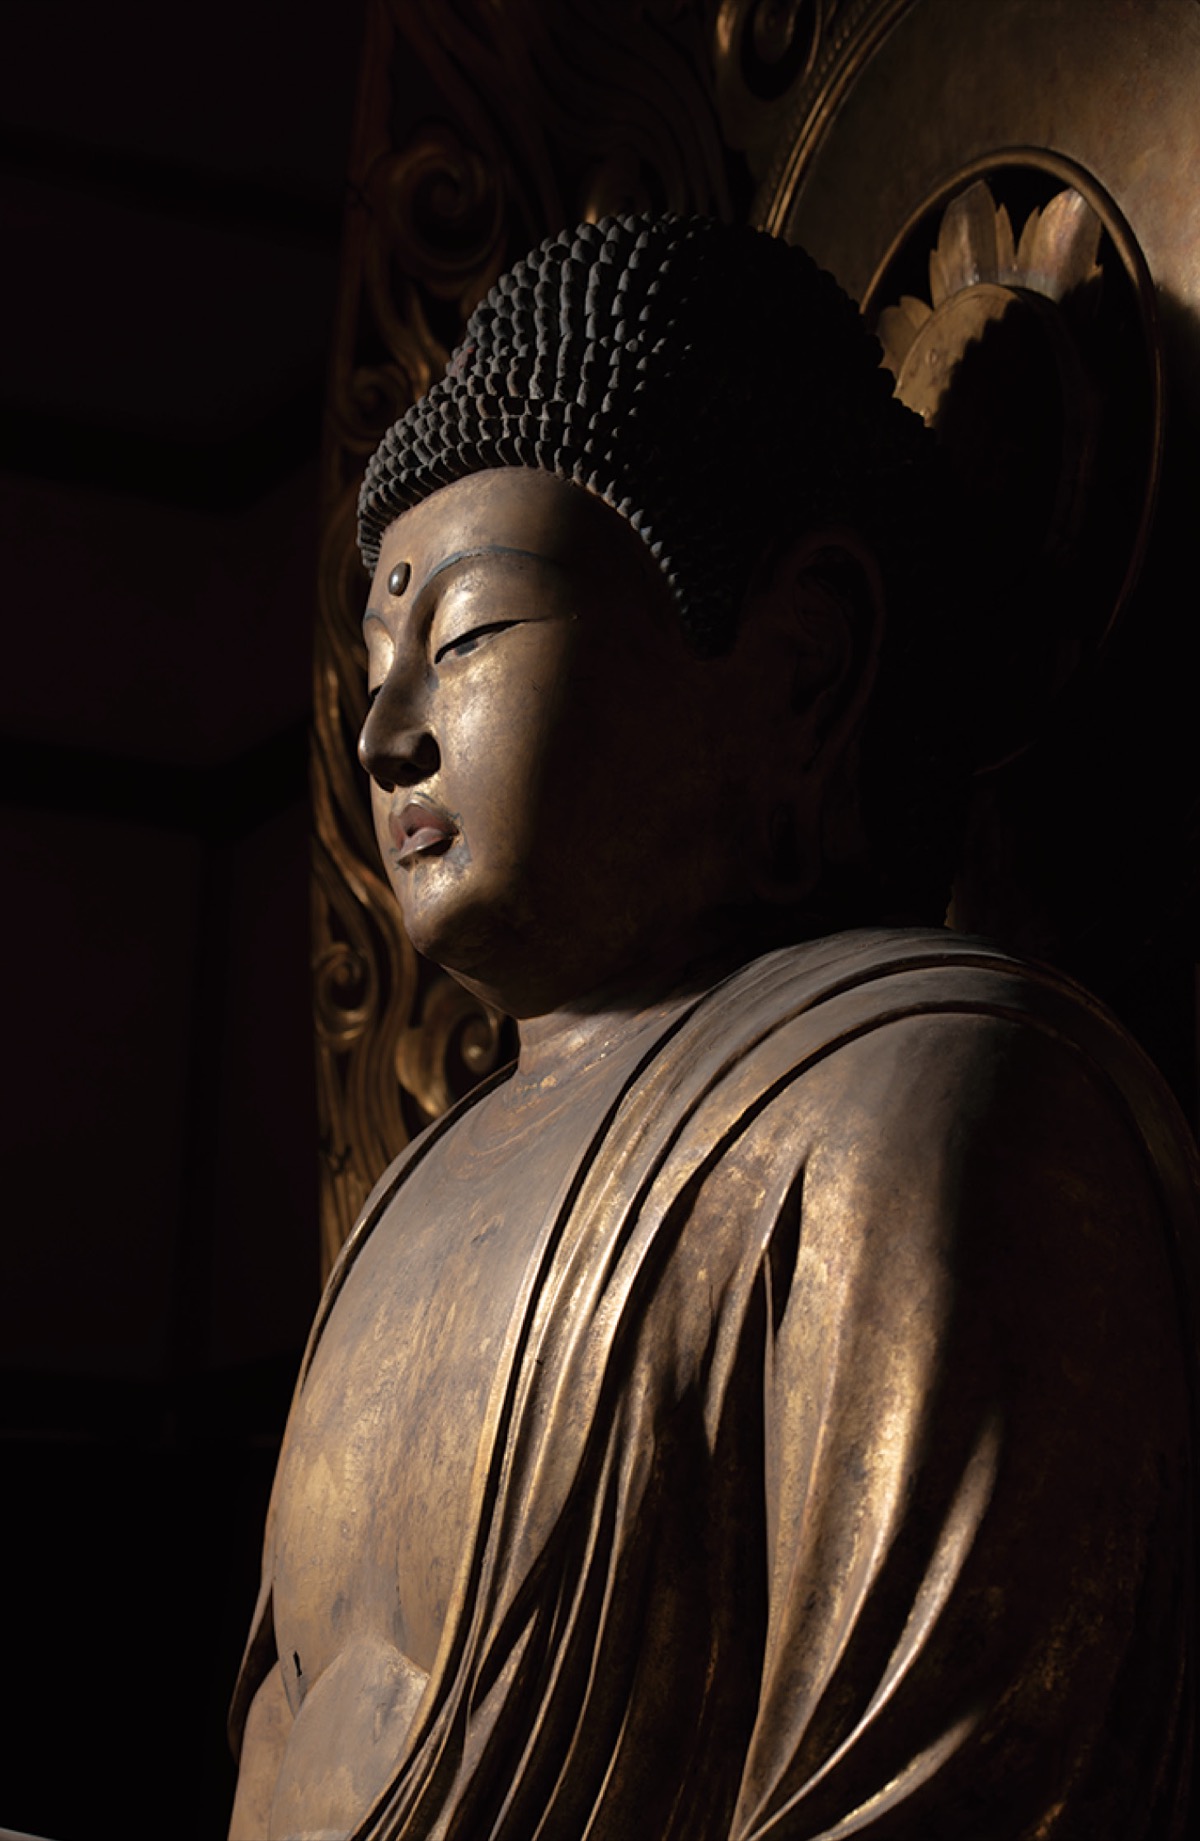 運慶作仏像を特別開帳 浄楽寺で10月19日 | 横須賀 | タウンニュース